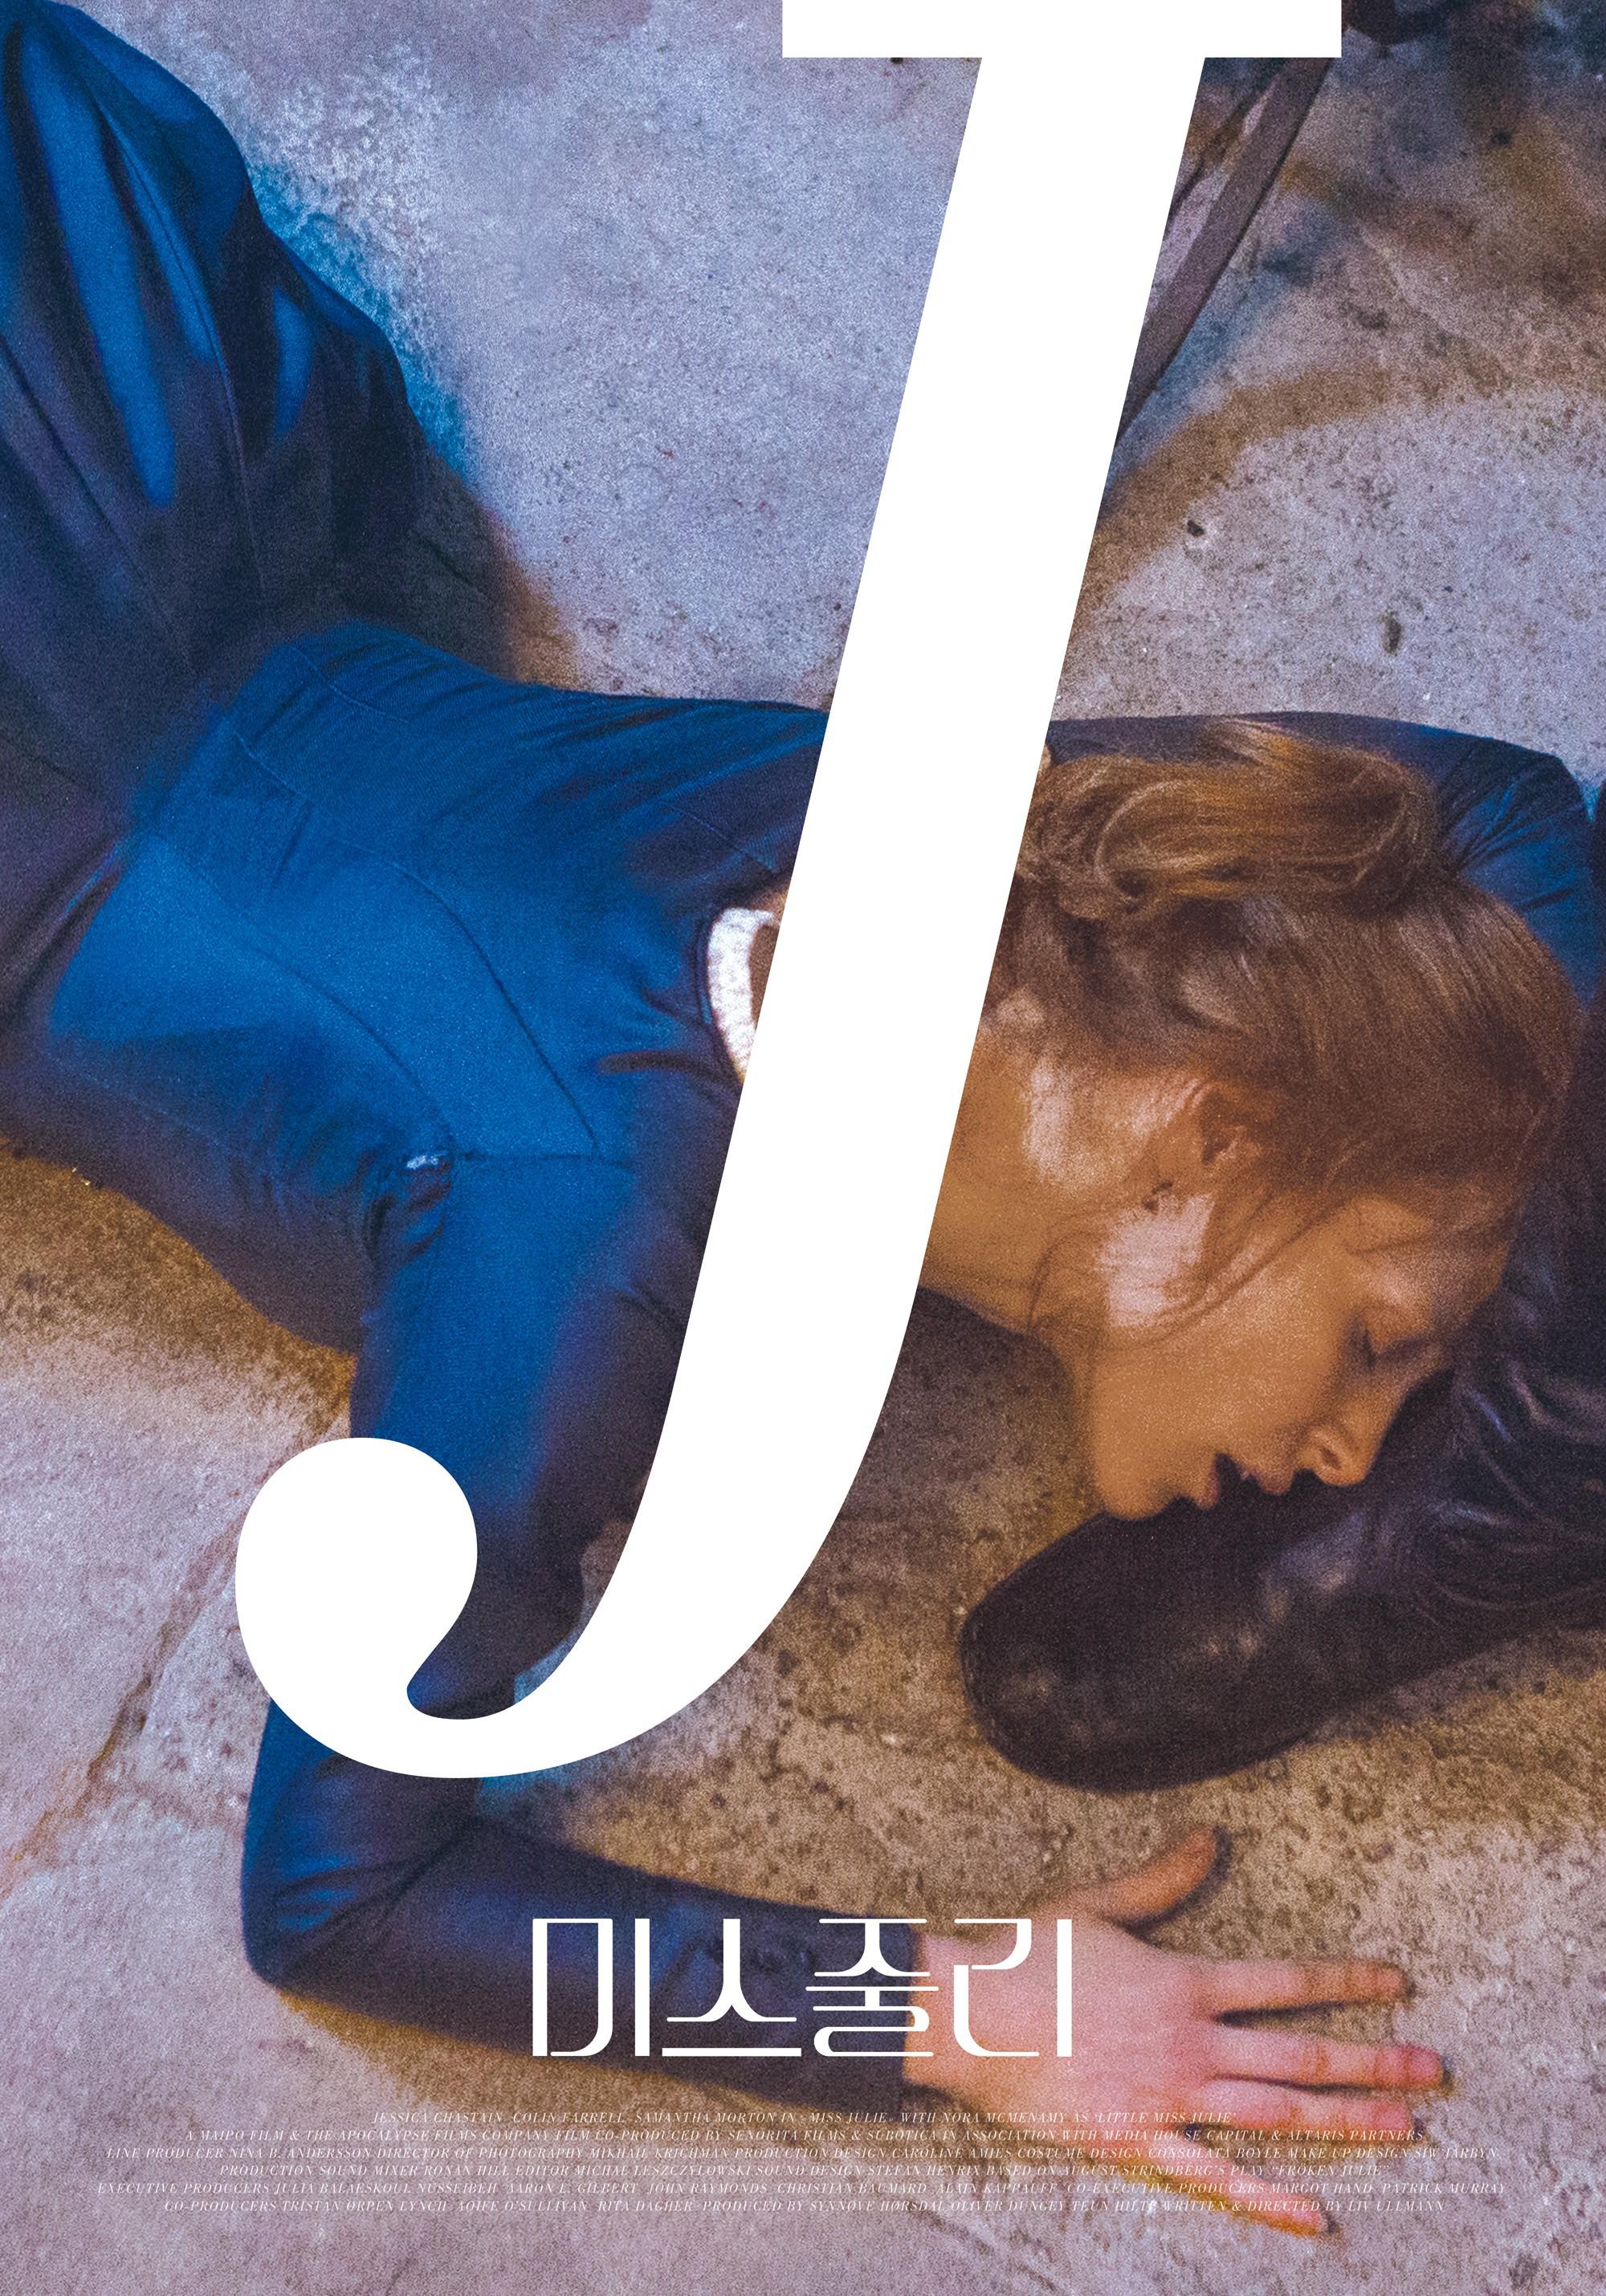 Постер фильма Мисс Джули | Miss Julie